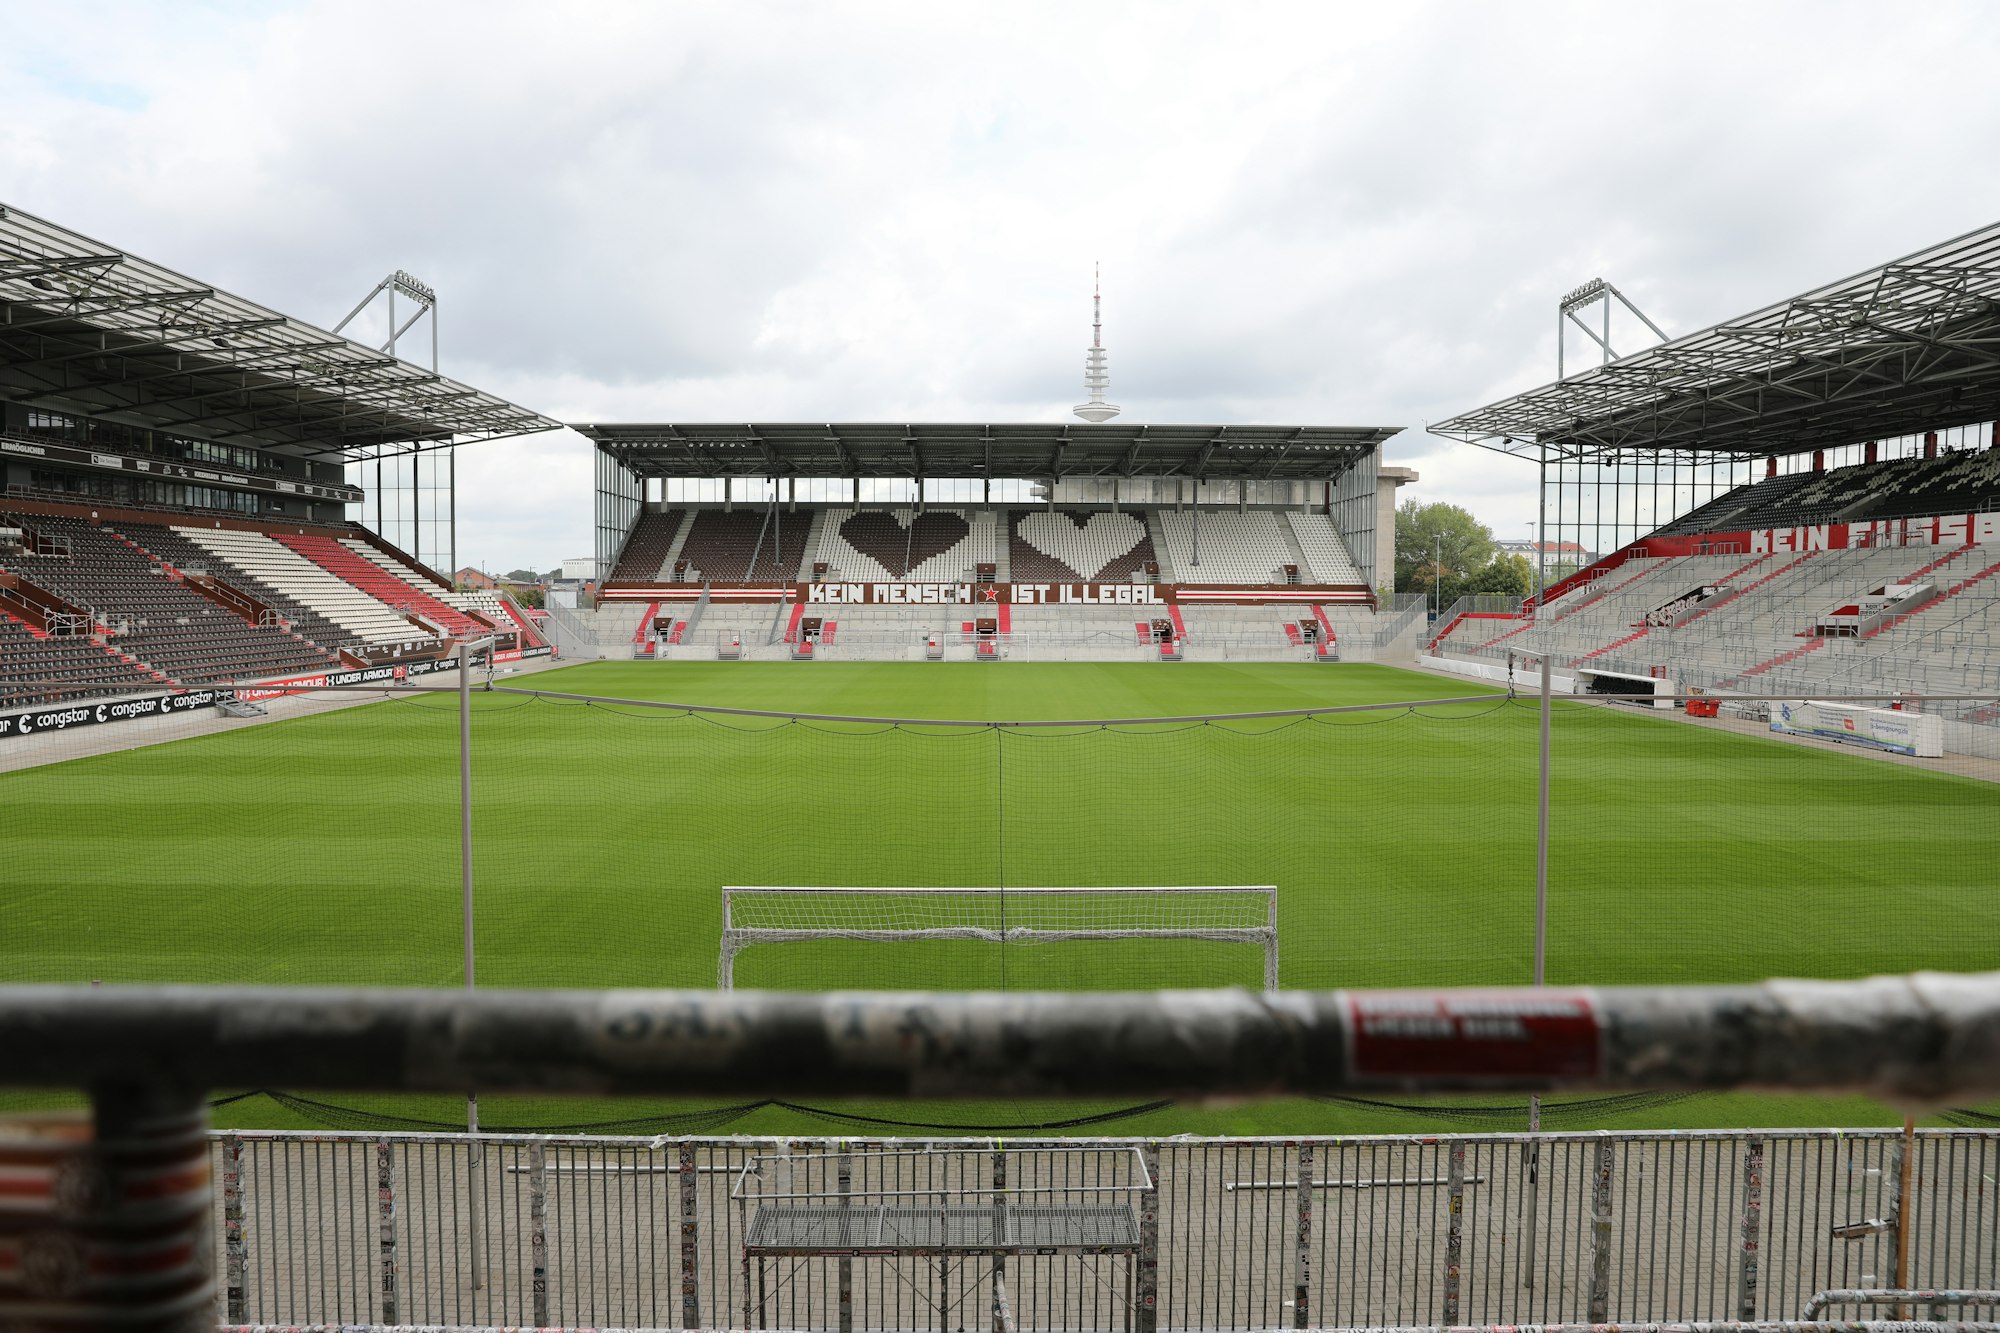 Stadionansicht vom Stadion des FC St. Pauli